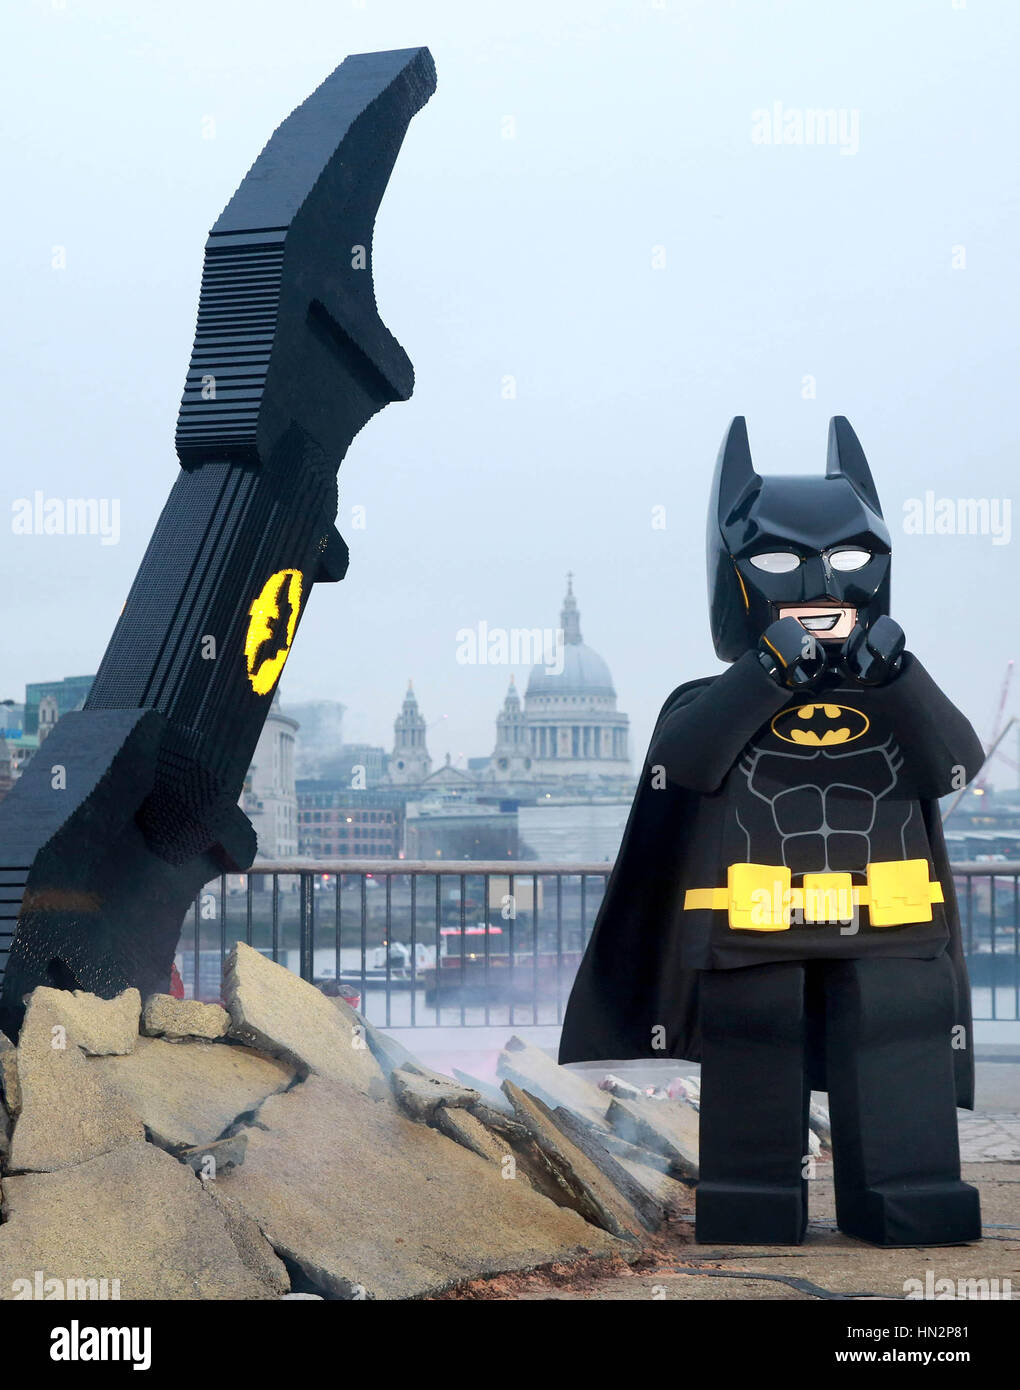 REDAKTIONELLE Nutzung nur A LEGO Batman Figur besucht einen 4 Meter lange  Batarang aus 35.000 Legosteinen gemacht, wie es auf Anzeige heute am  Aussichtspunkt auf der Londoner Southbank zur Feier der Veröffentlichung